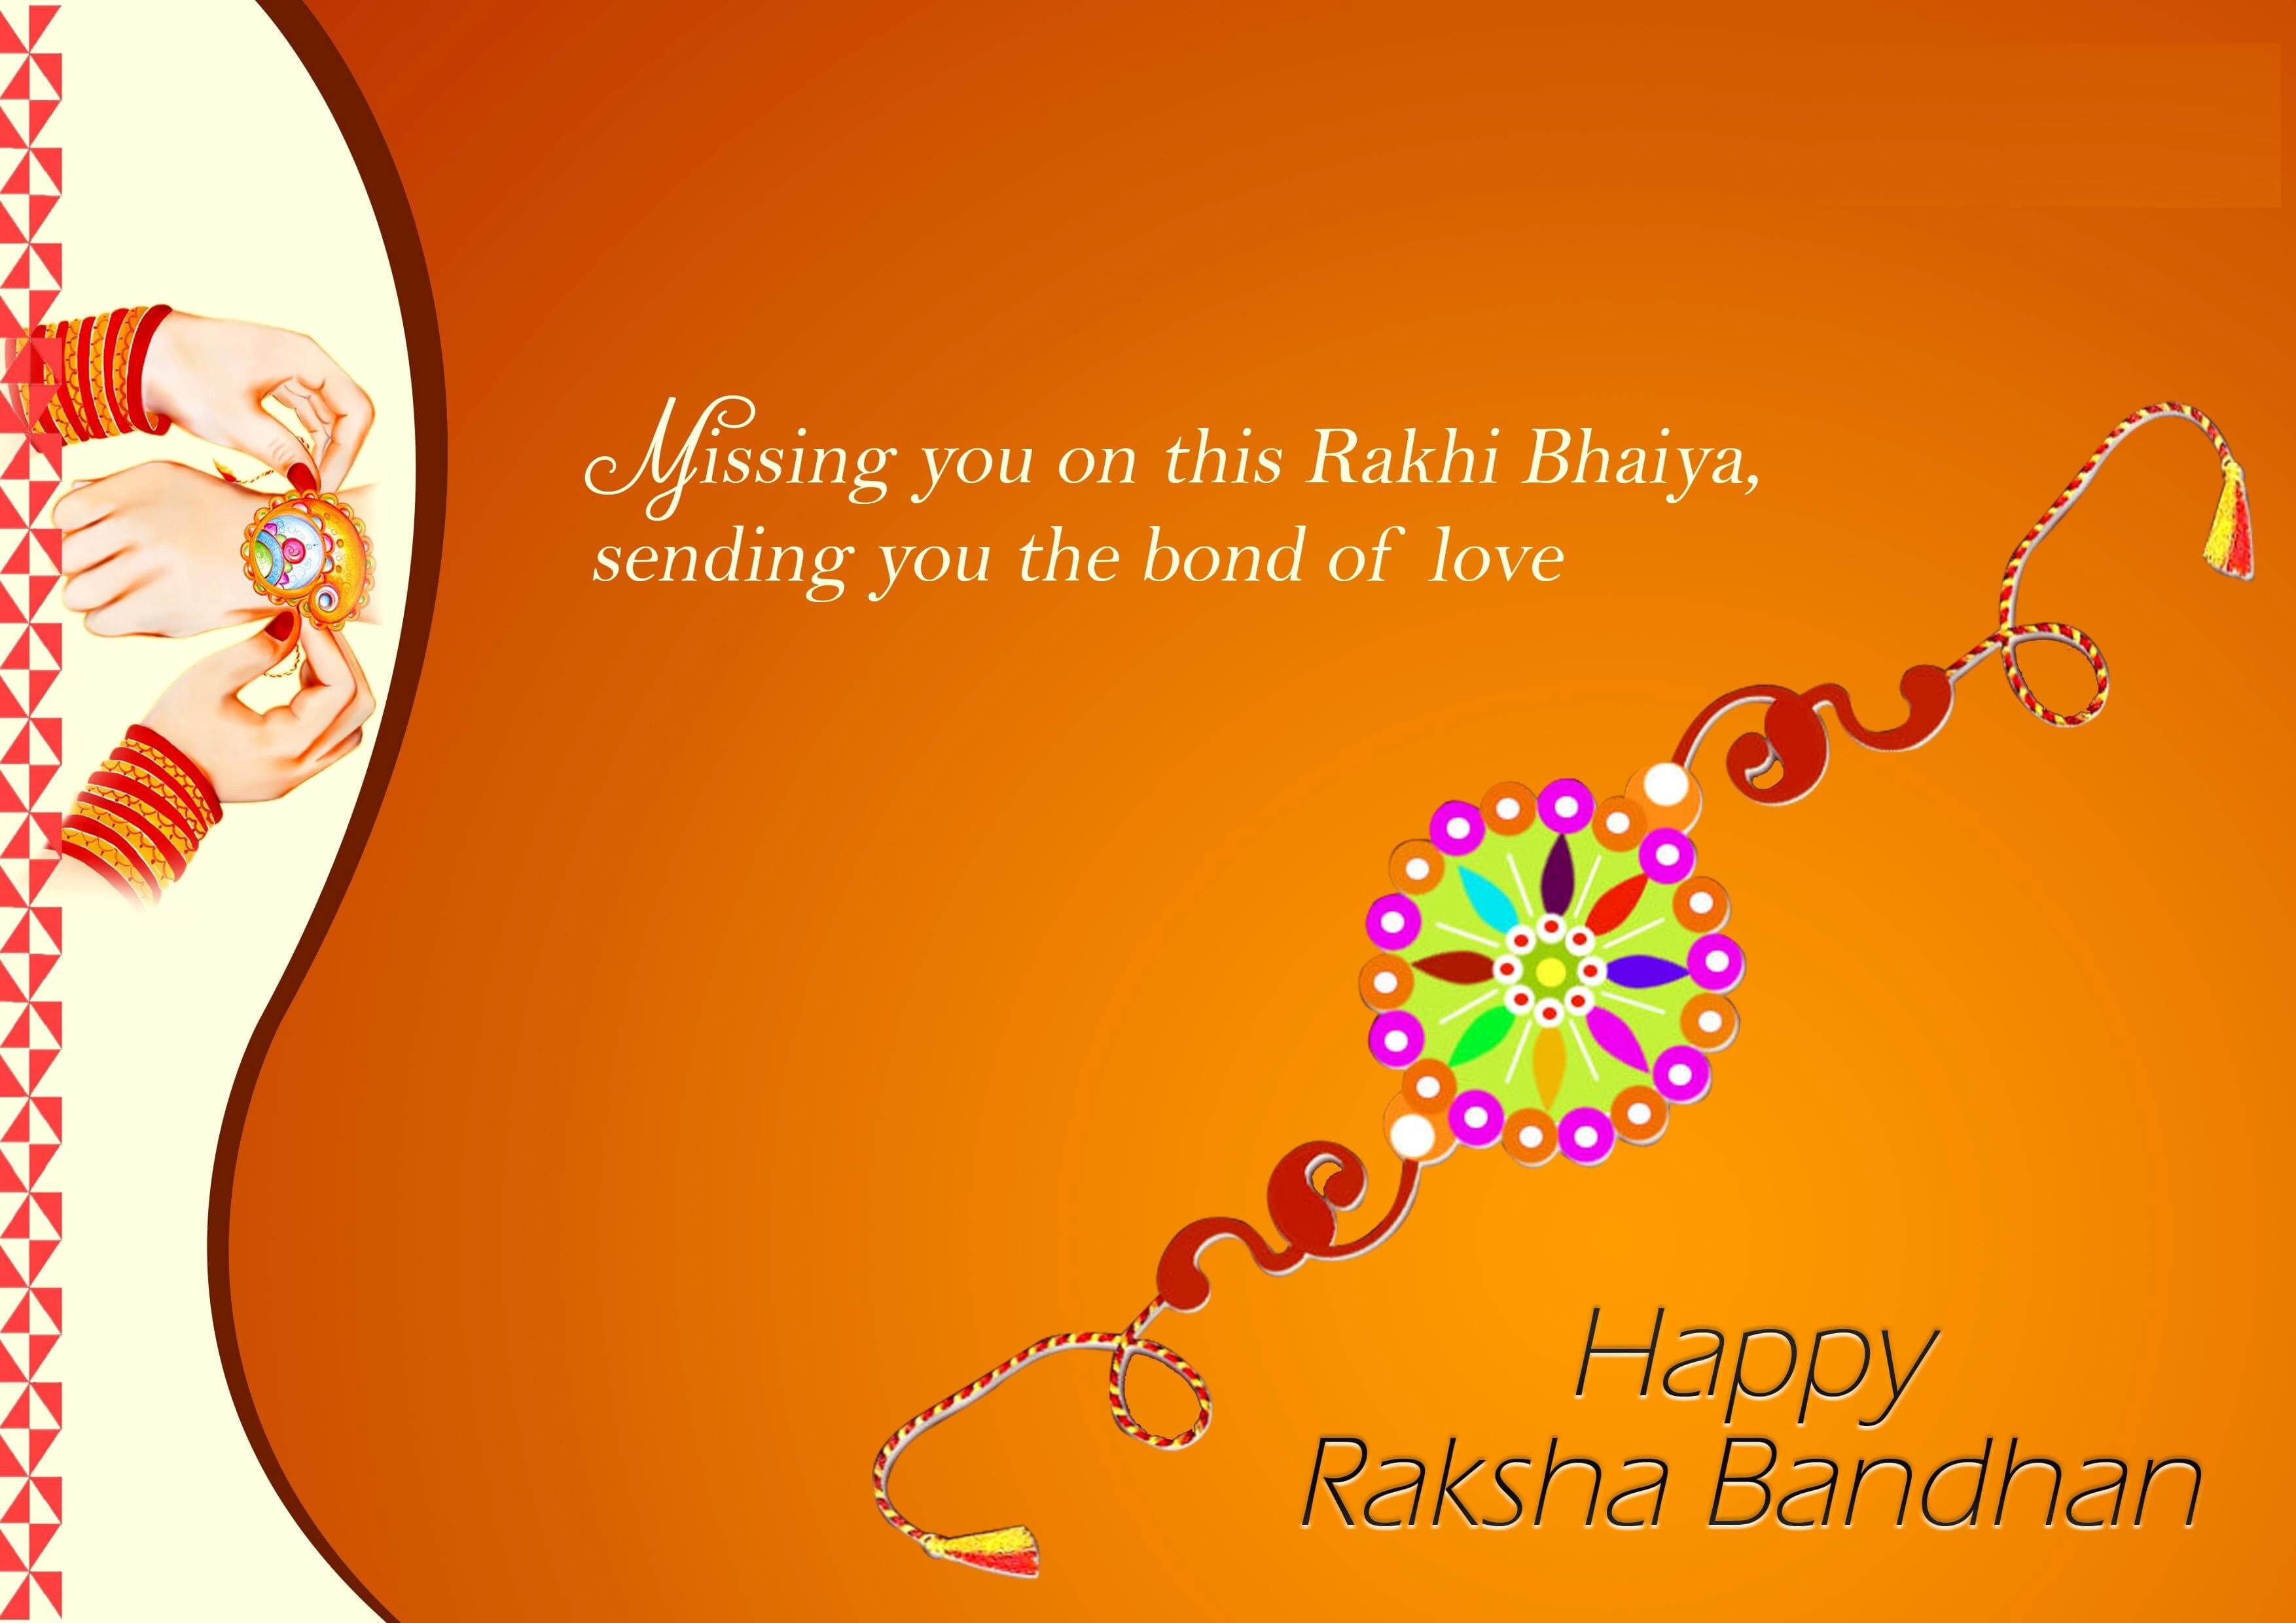 Happy Raksha Bandhan Greetings images wallapers in hindi